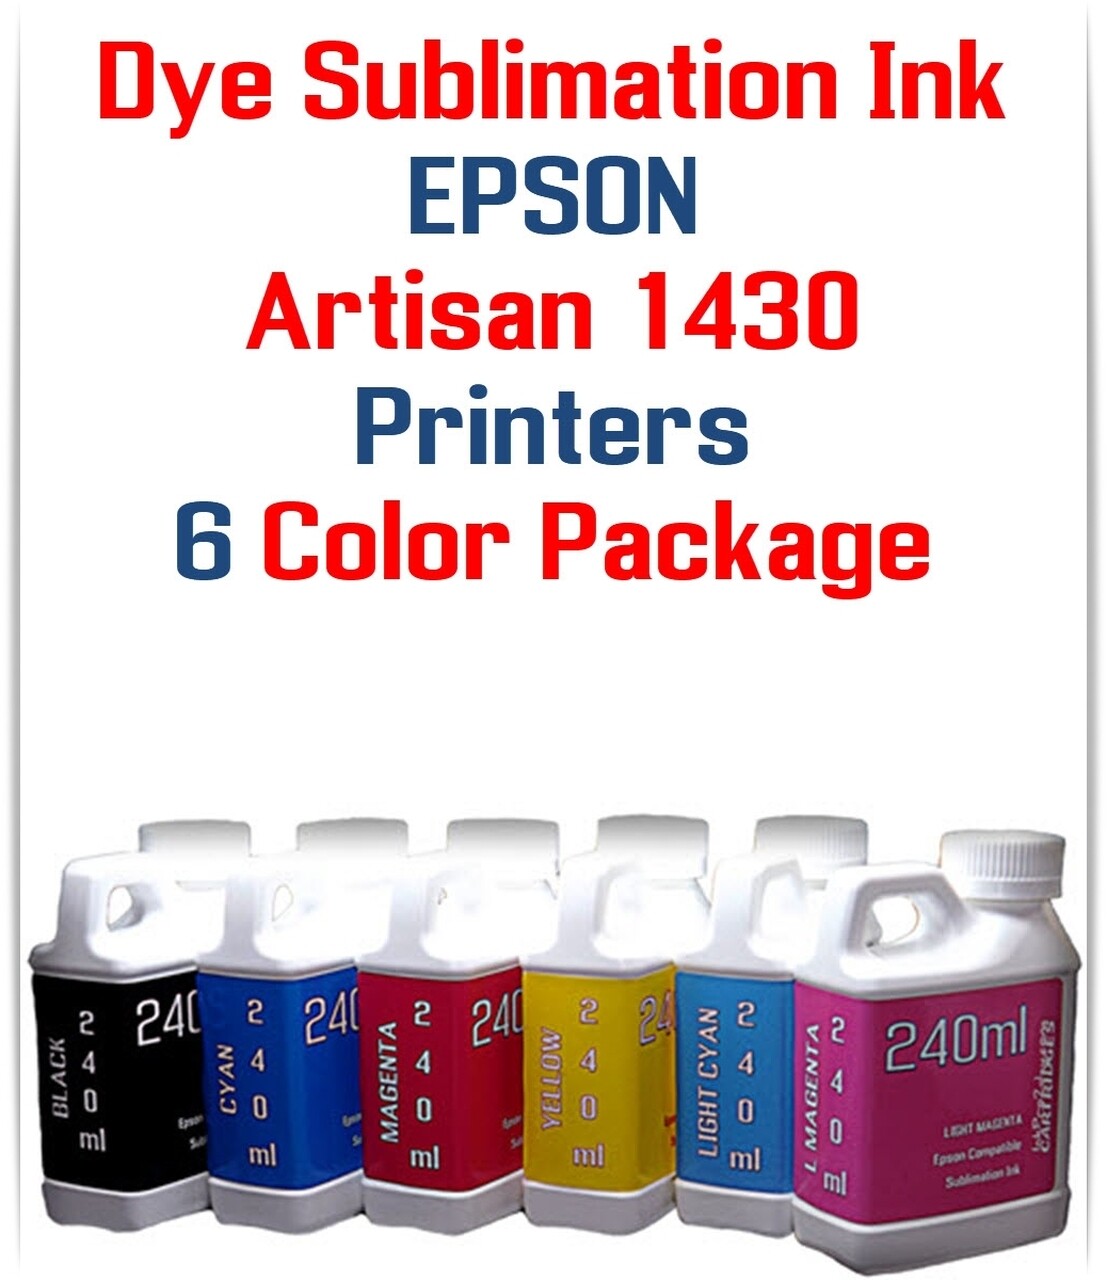 Dye Sublimation Ink 6- 240ml bottles for Epson Artisan 1430 Printer